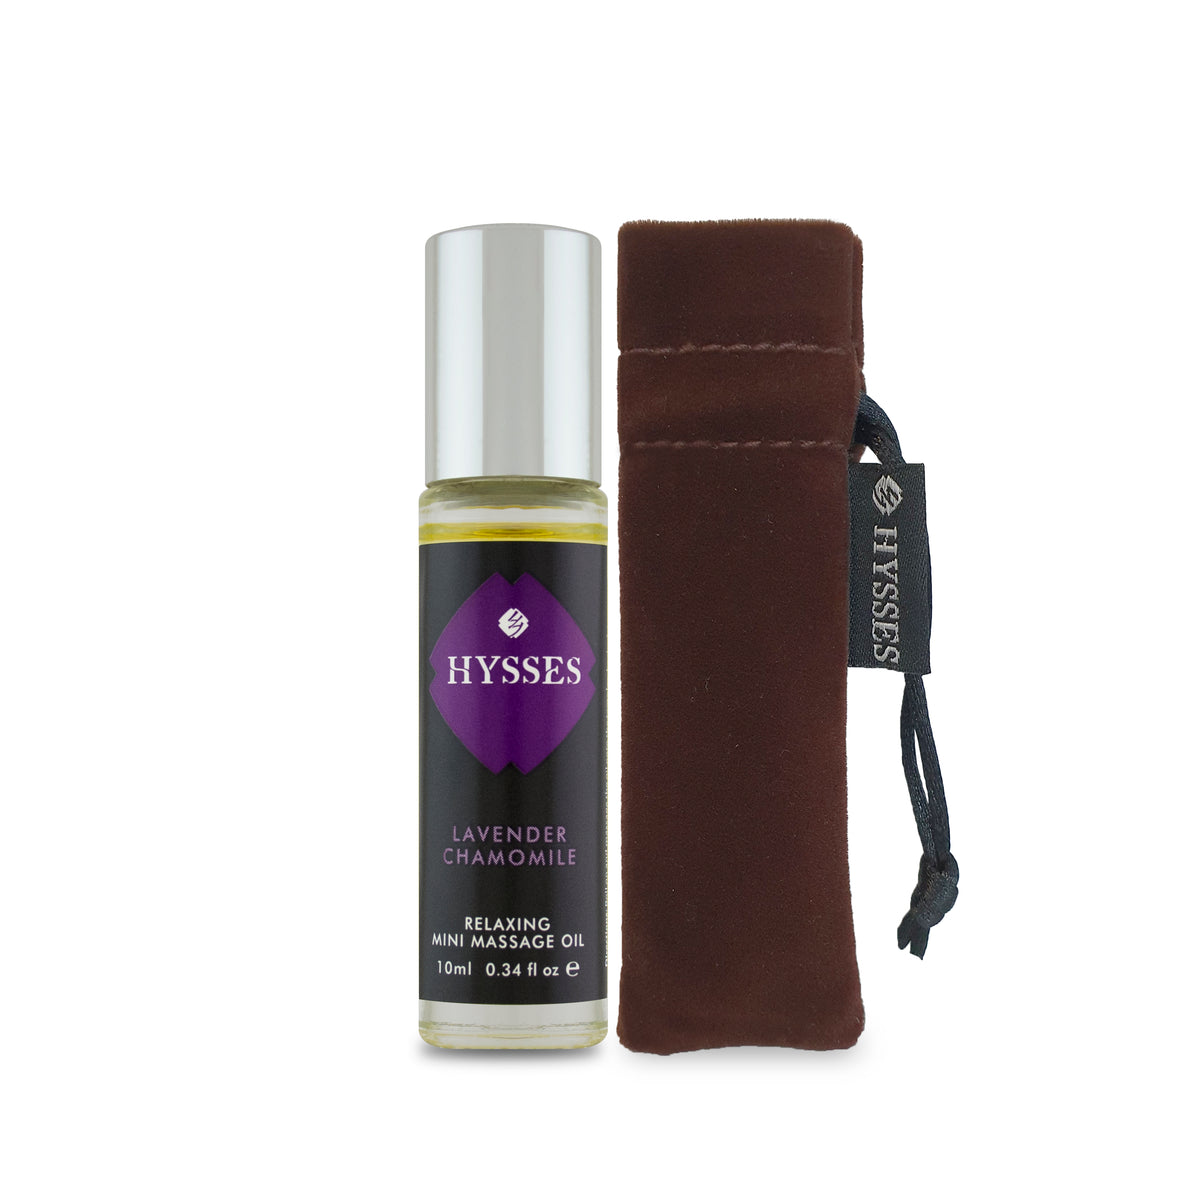 Mini Massage Oil Lavender Chamomile